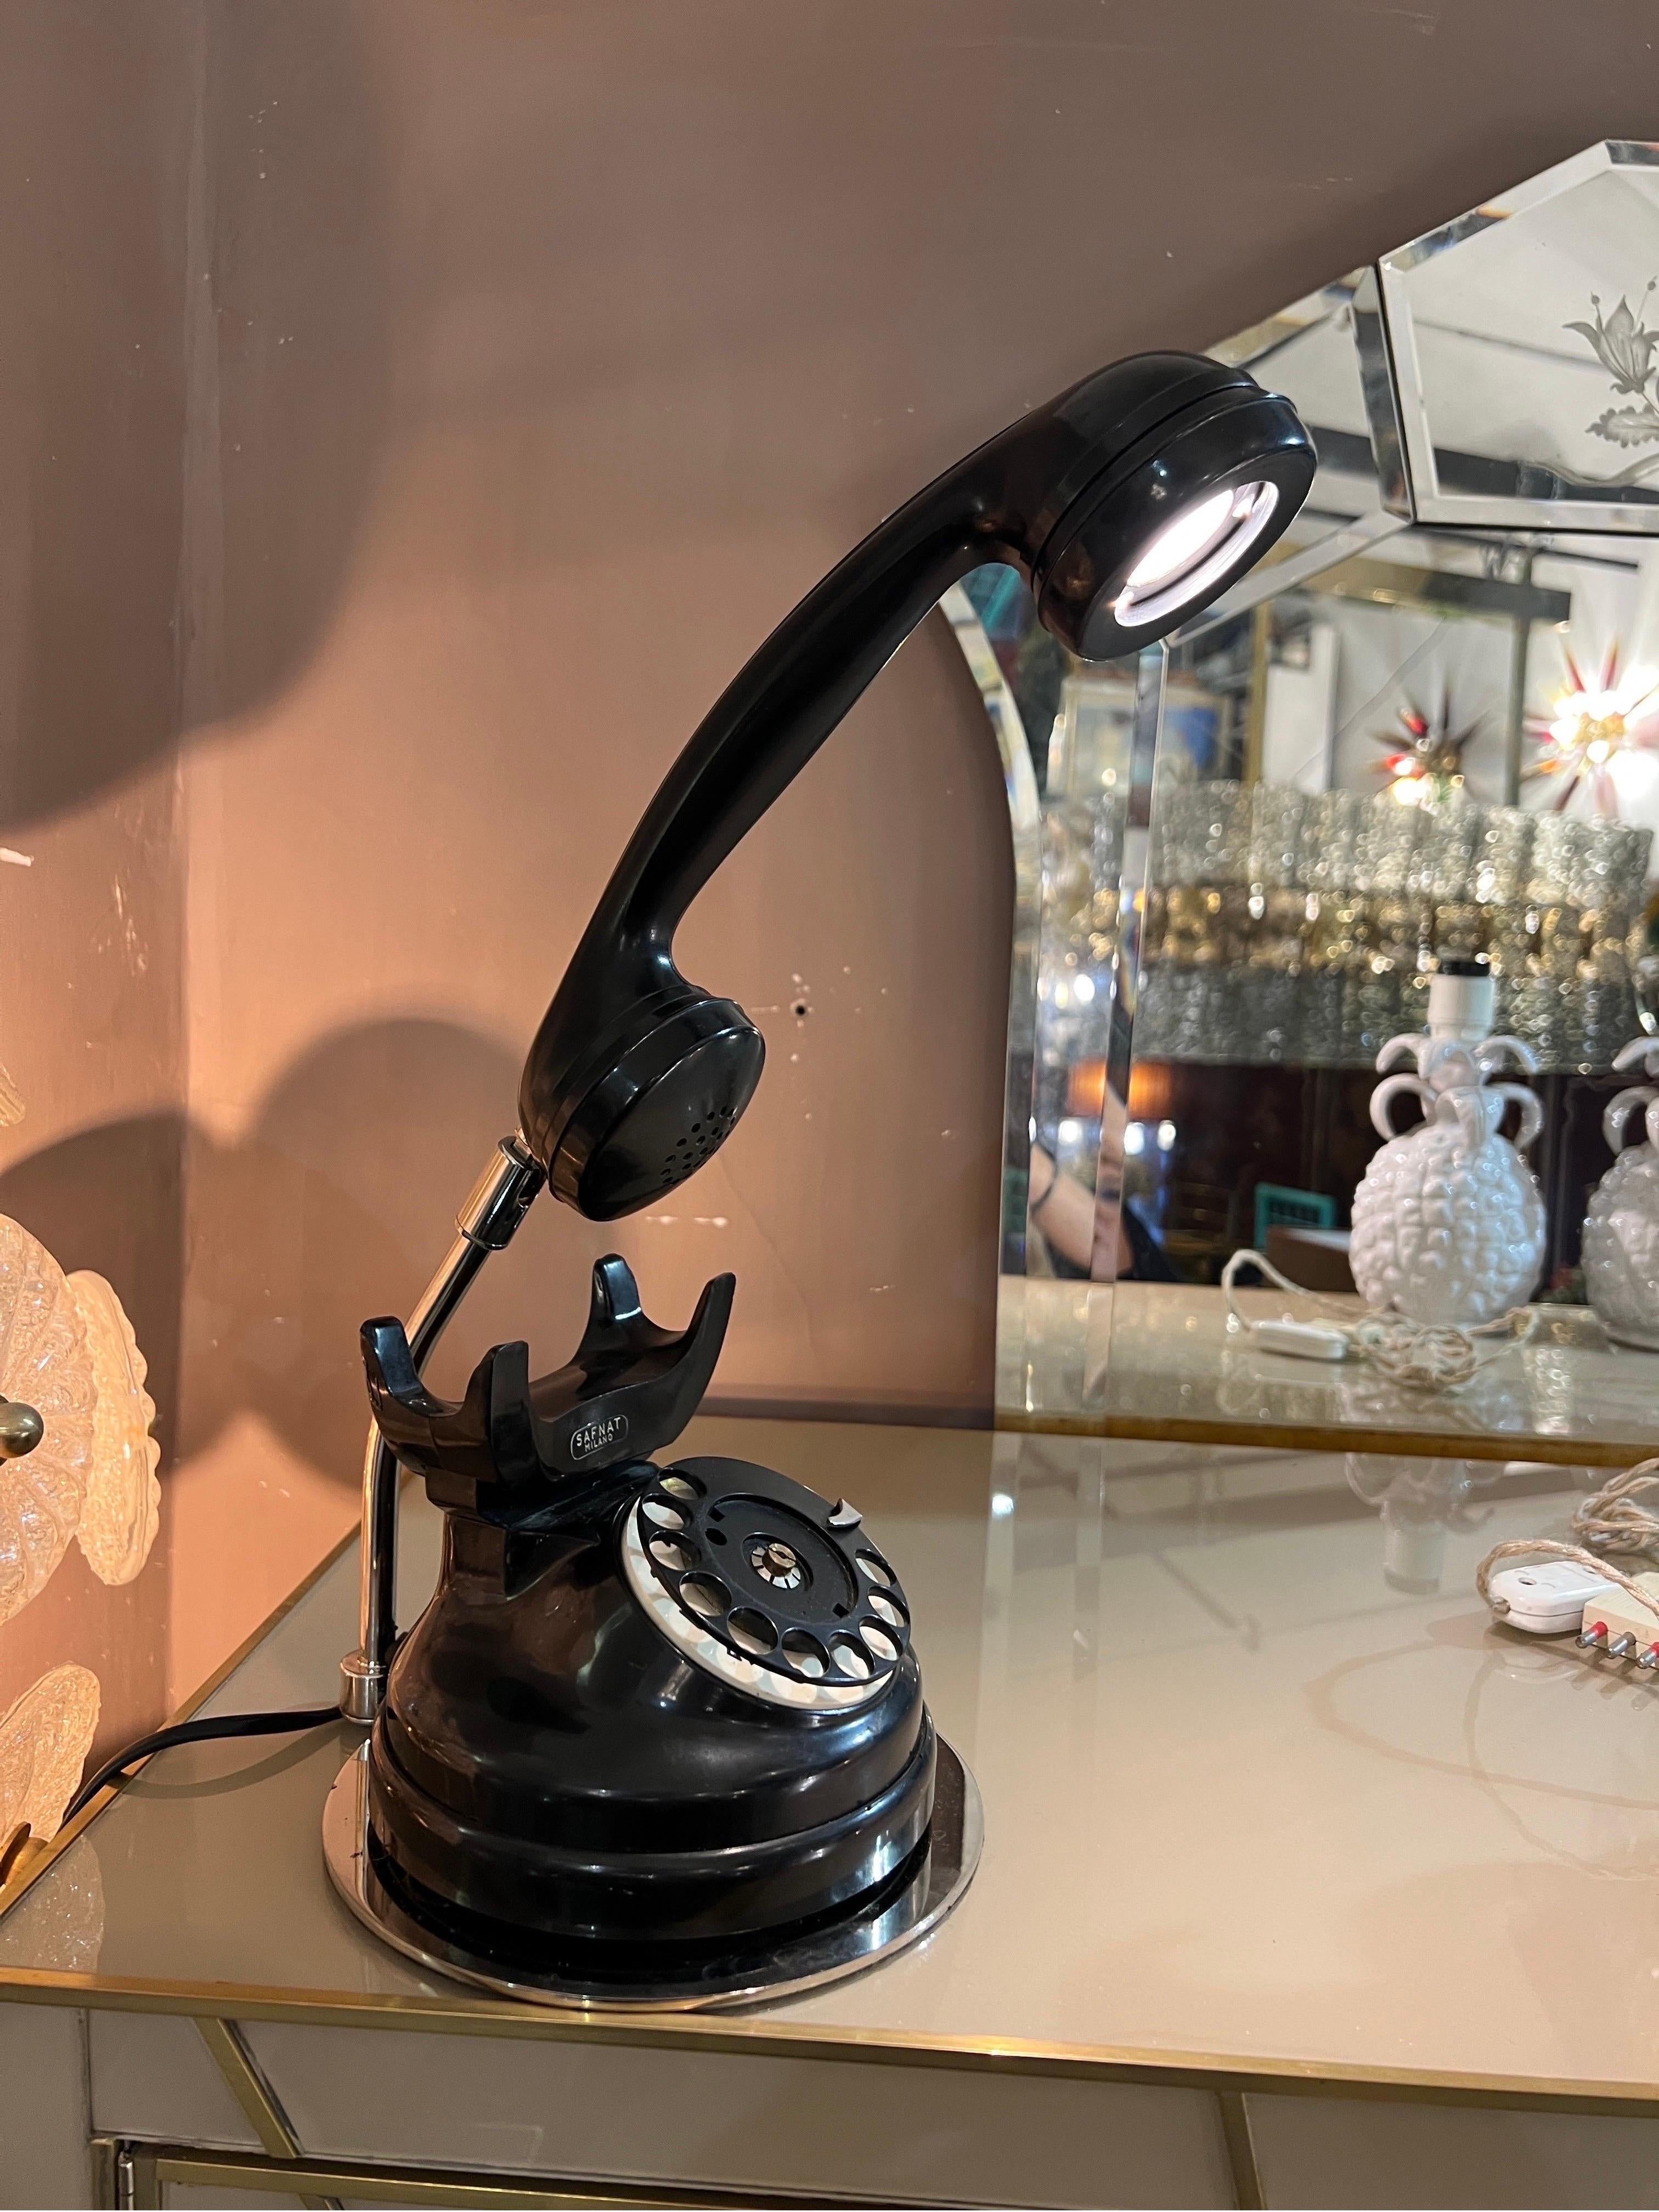 Lampe de table téléphonique en bakélite noire du milieu du siècle dernier, signée Safnat Milano.
Le téléphone est doté de raccords chromés.
Un voyant lumineux dans le combiné du téléphone.
Il a été recâblé avec une lumière LED mais le bouton